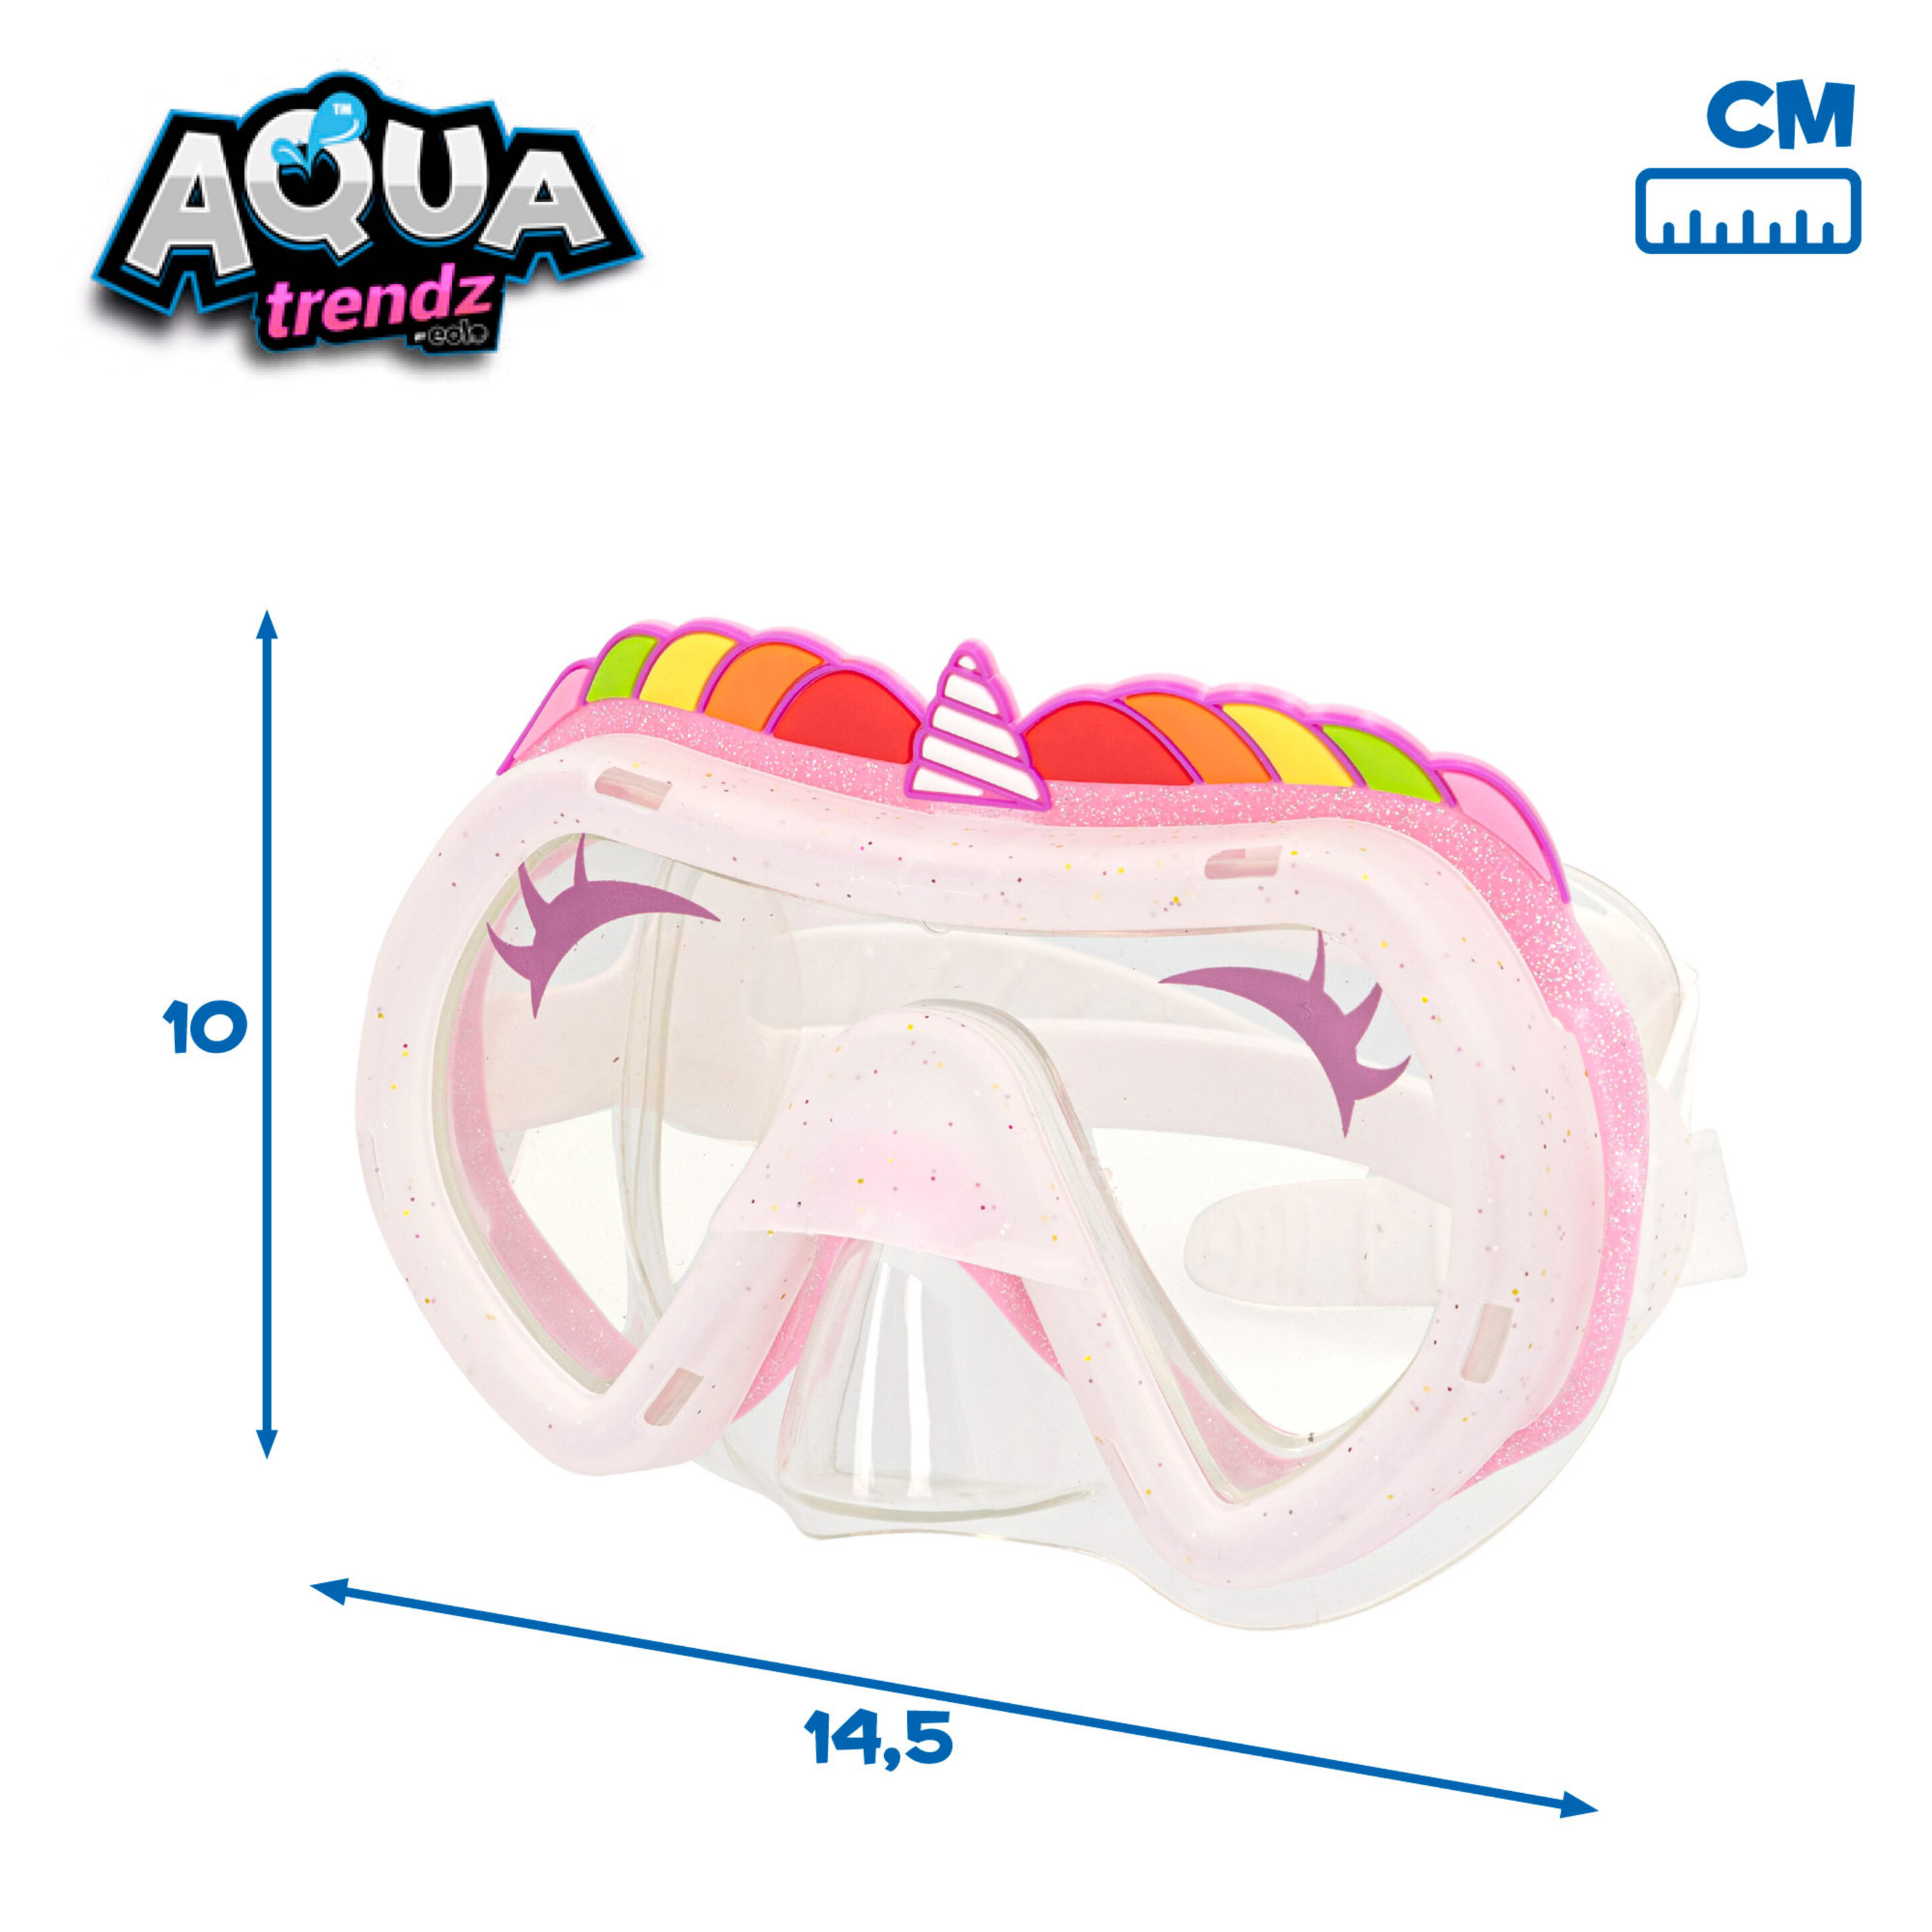 Máscara De Buceo Y Lanzador De Agua Unicornio Aqua Trendz - Multicolor  MKP